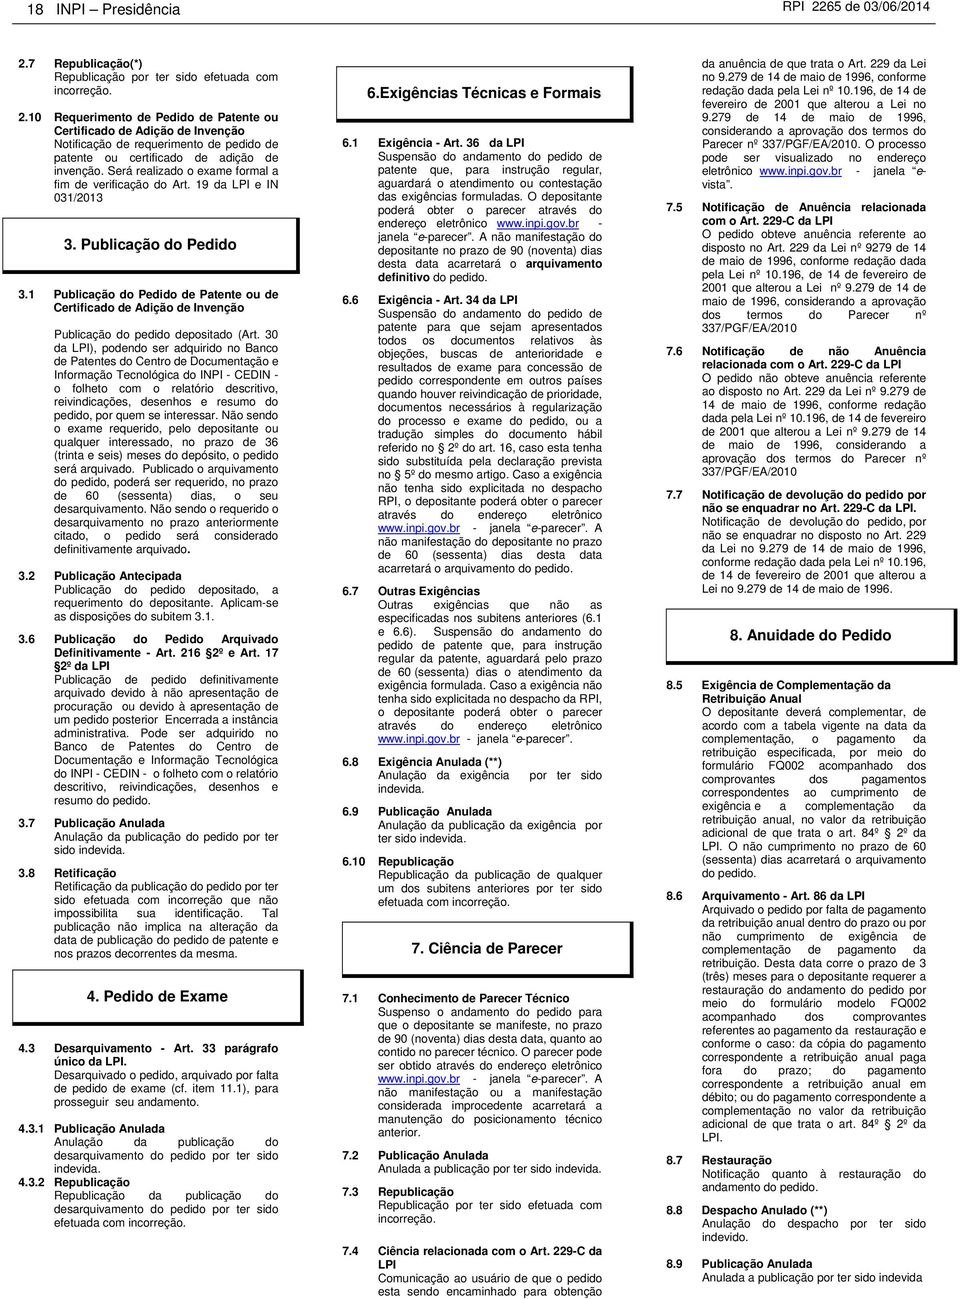 1 Publicação do Pedido de Patente ou de Certificado de Adição de Invenção Publicação do pedido depositado (Art.